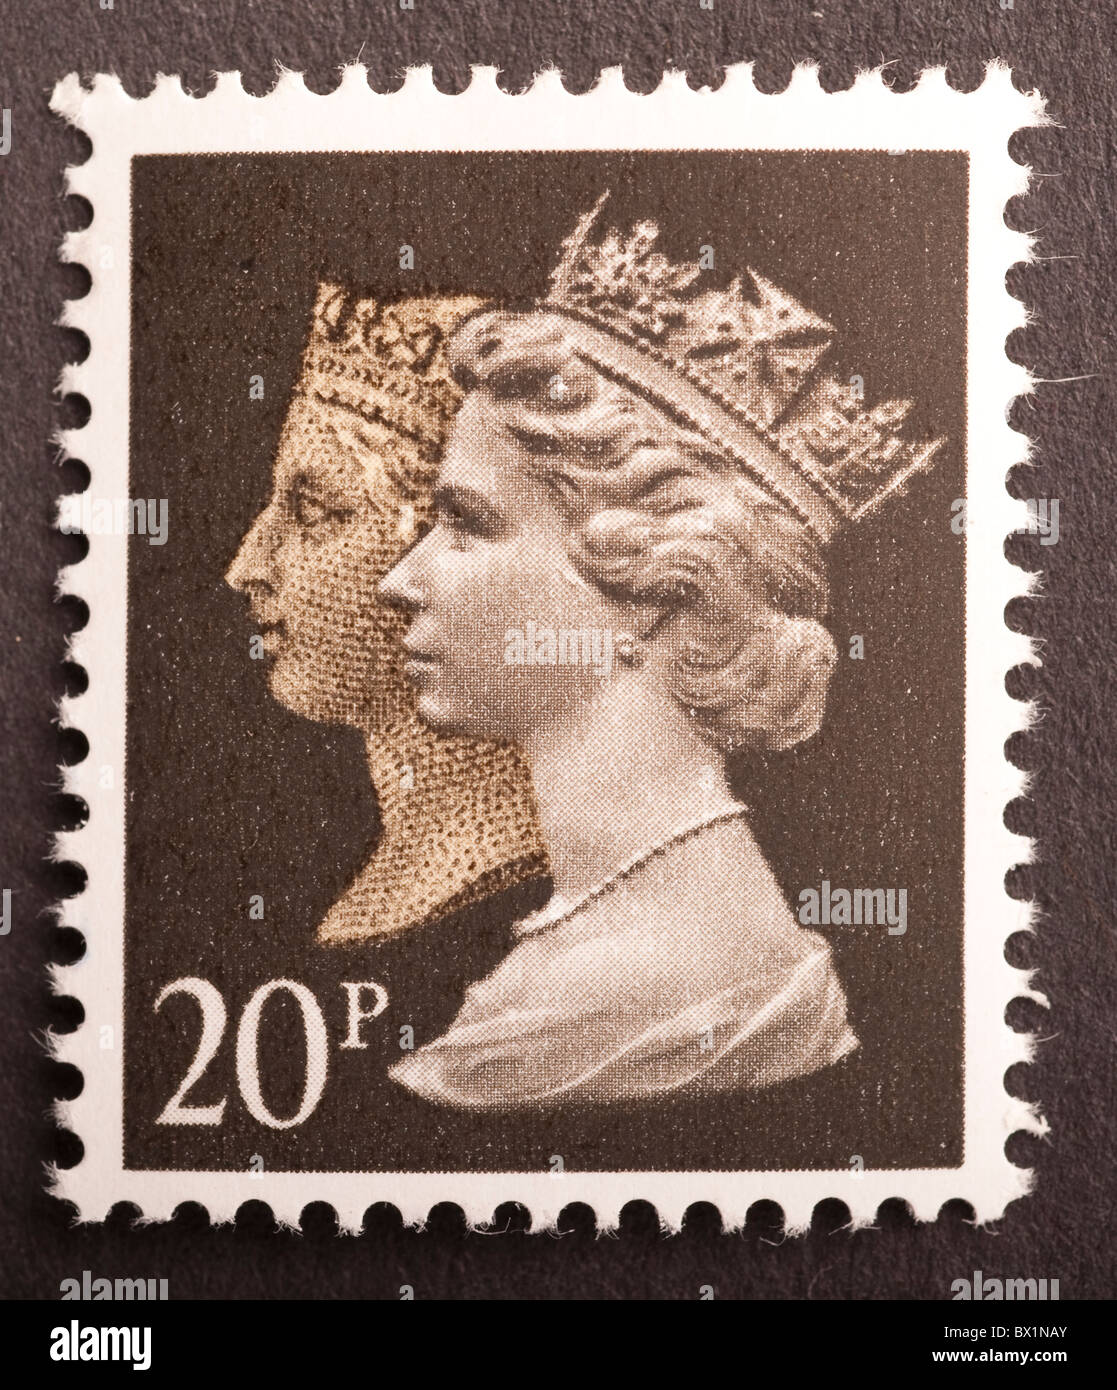 Reino Unido Sello de postage 20p, Machin Foto de stock